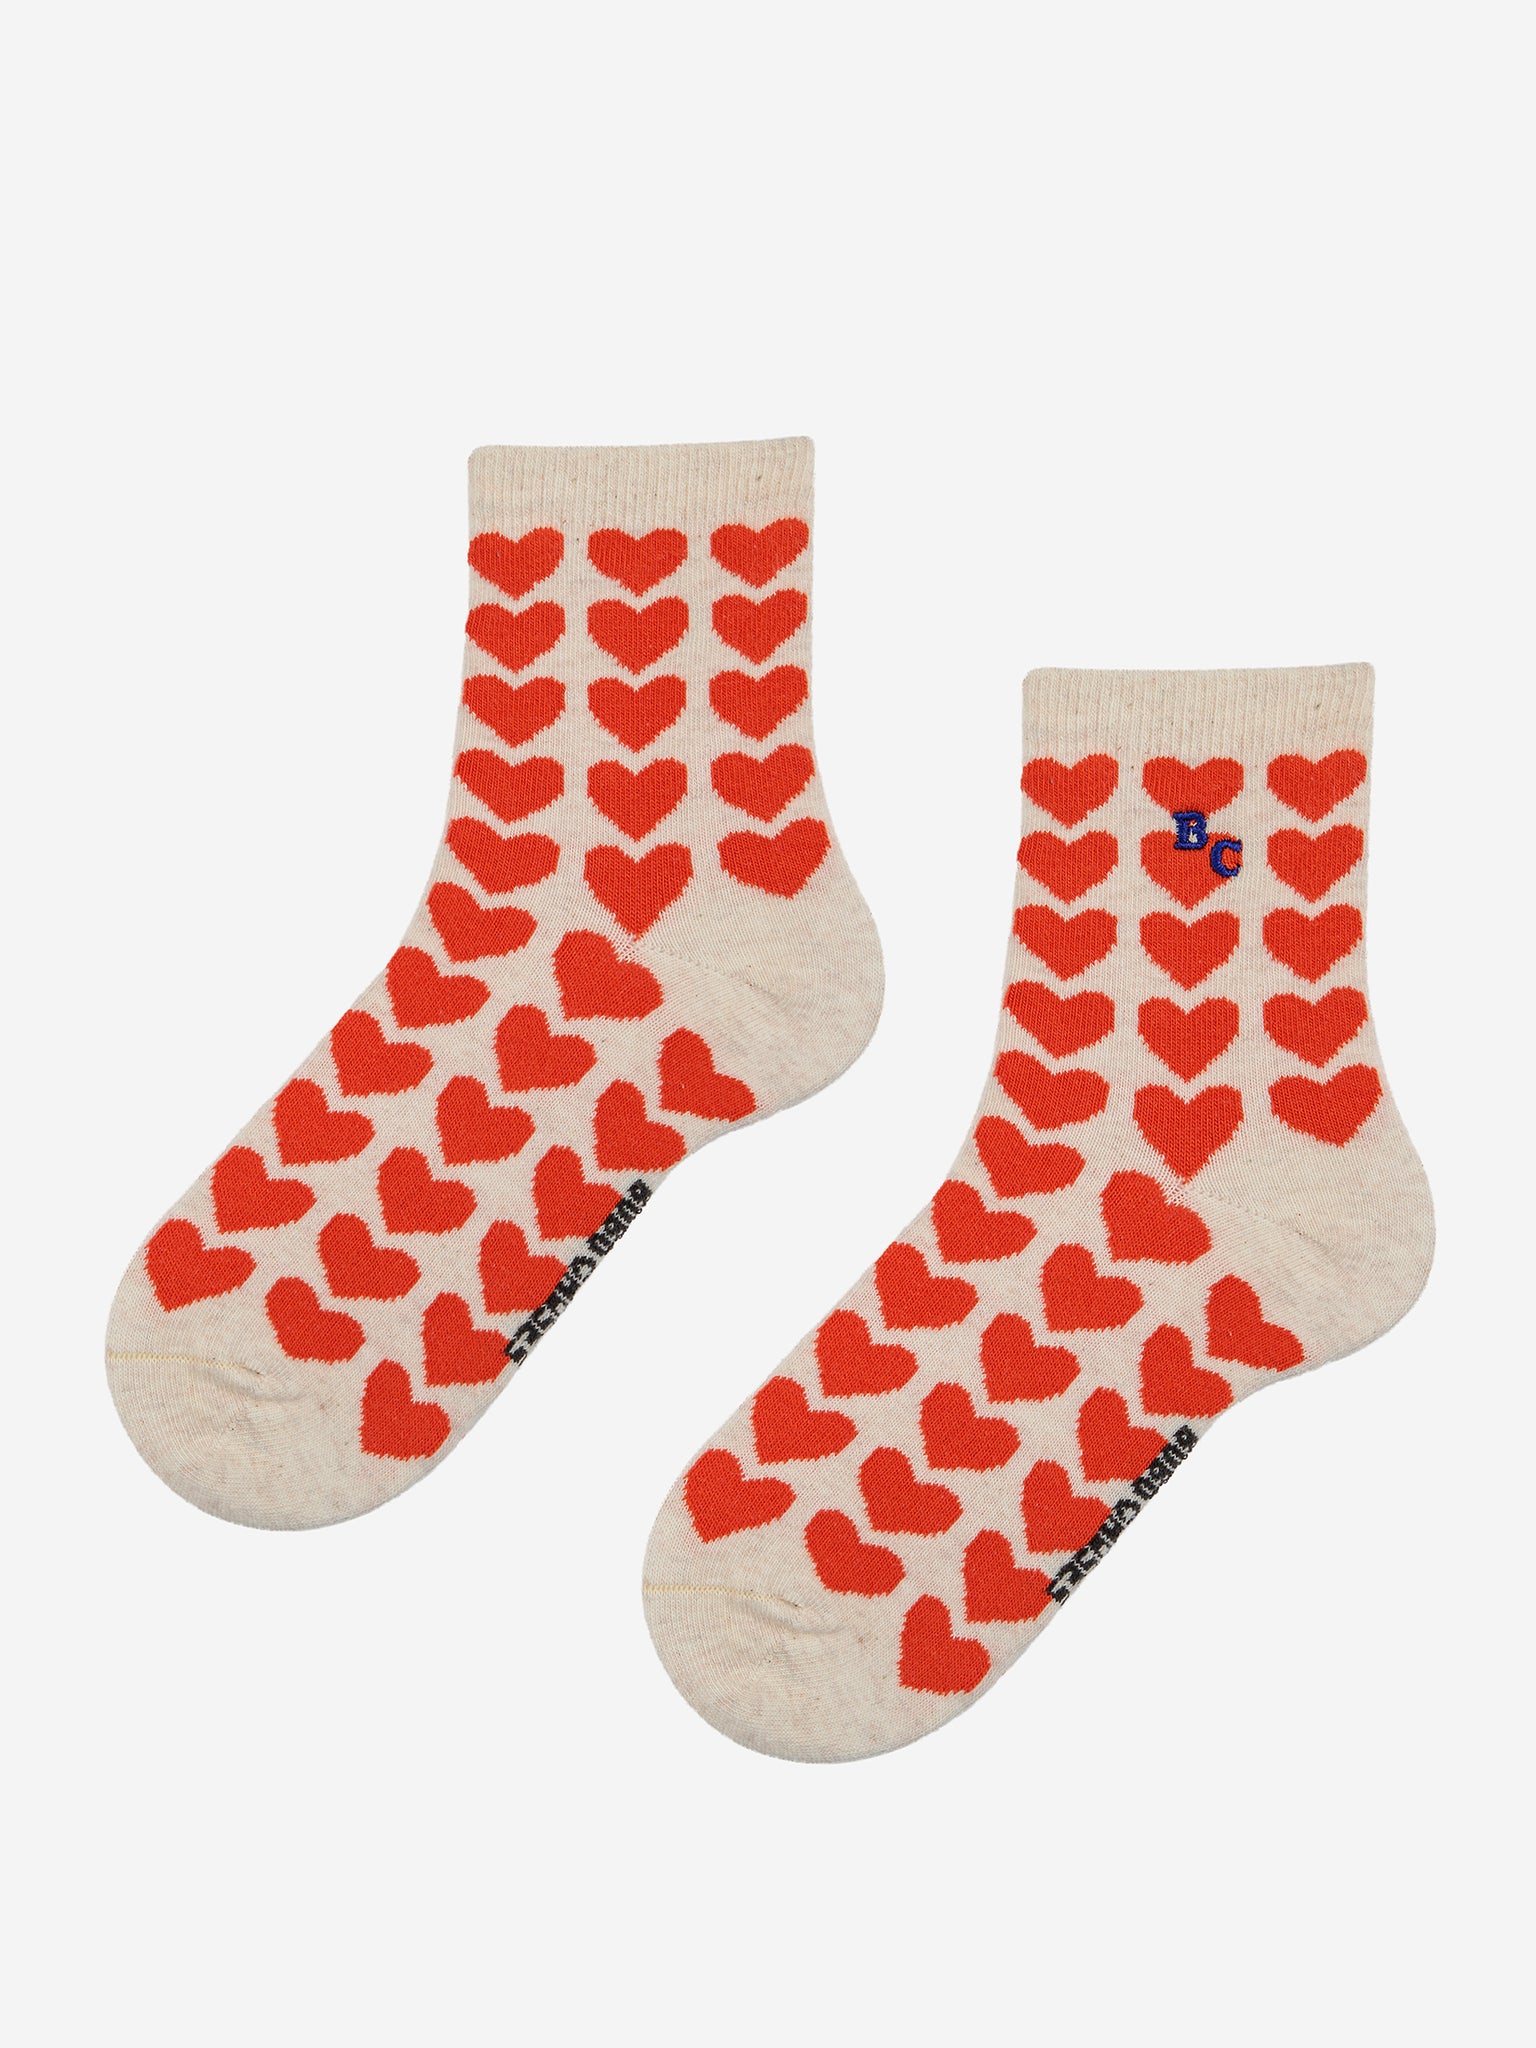 Hearts short socks